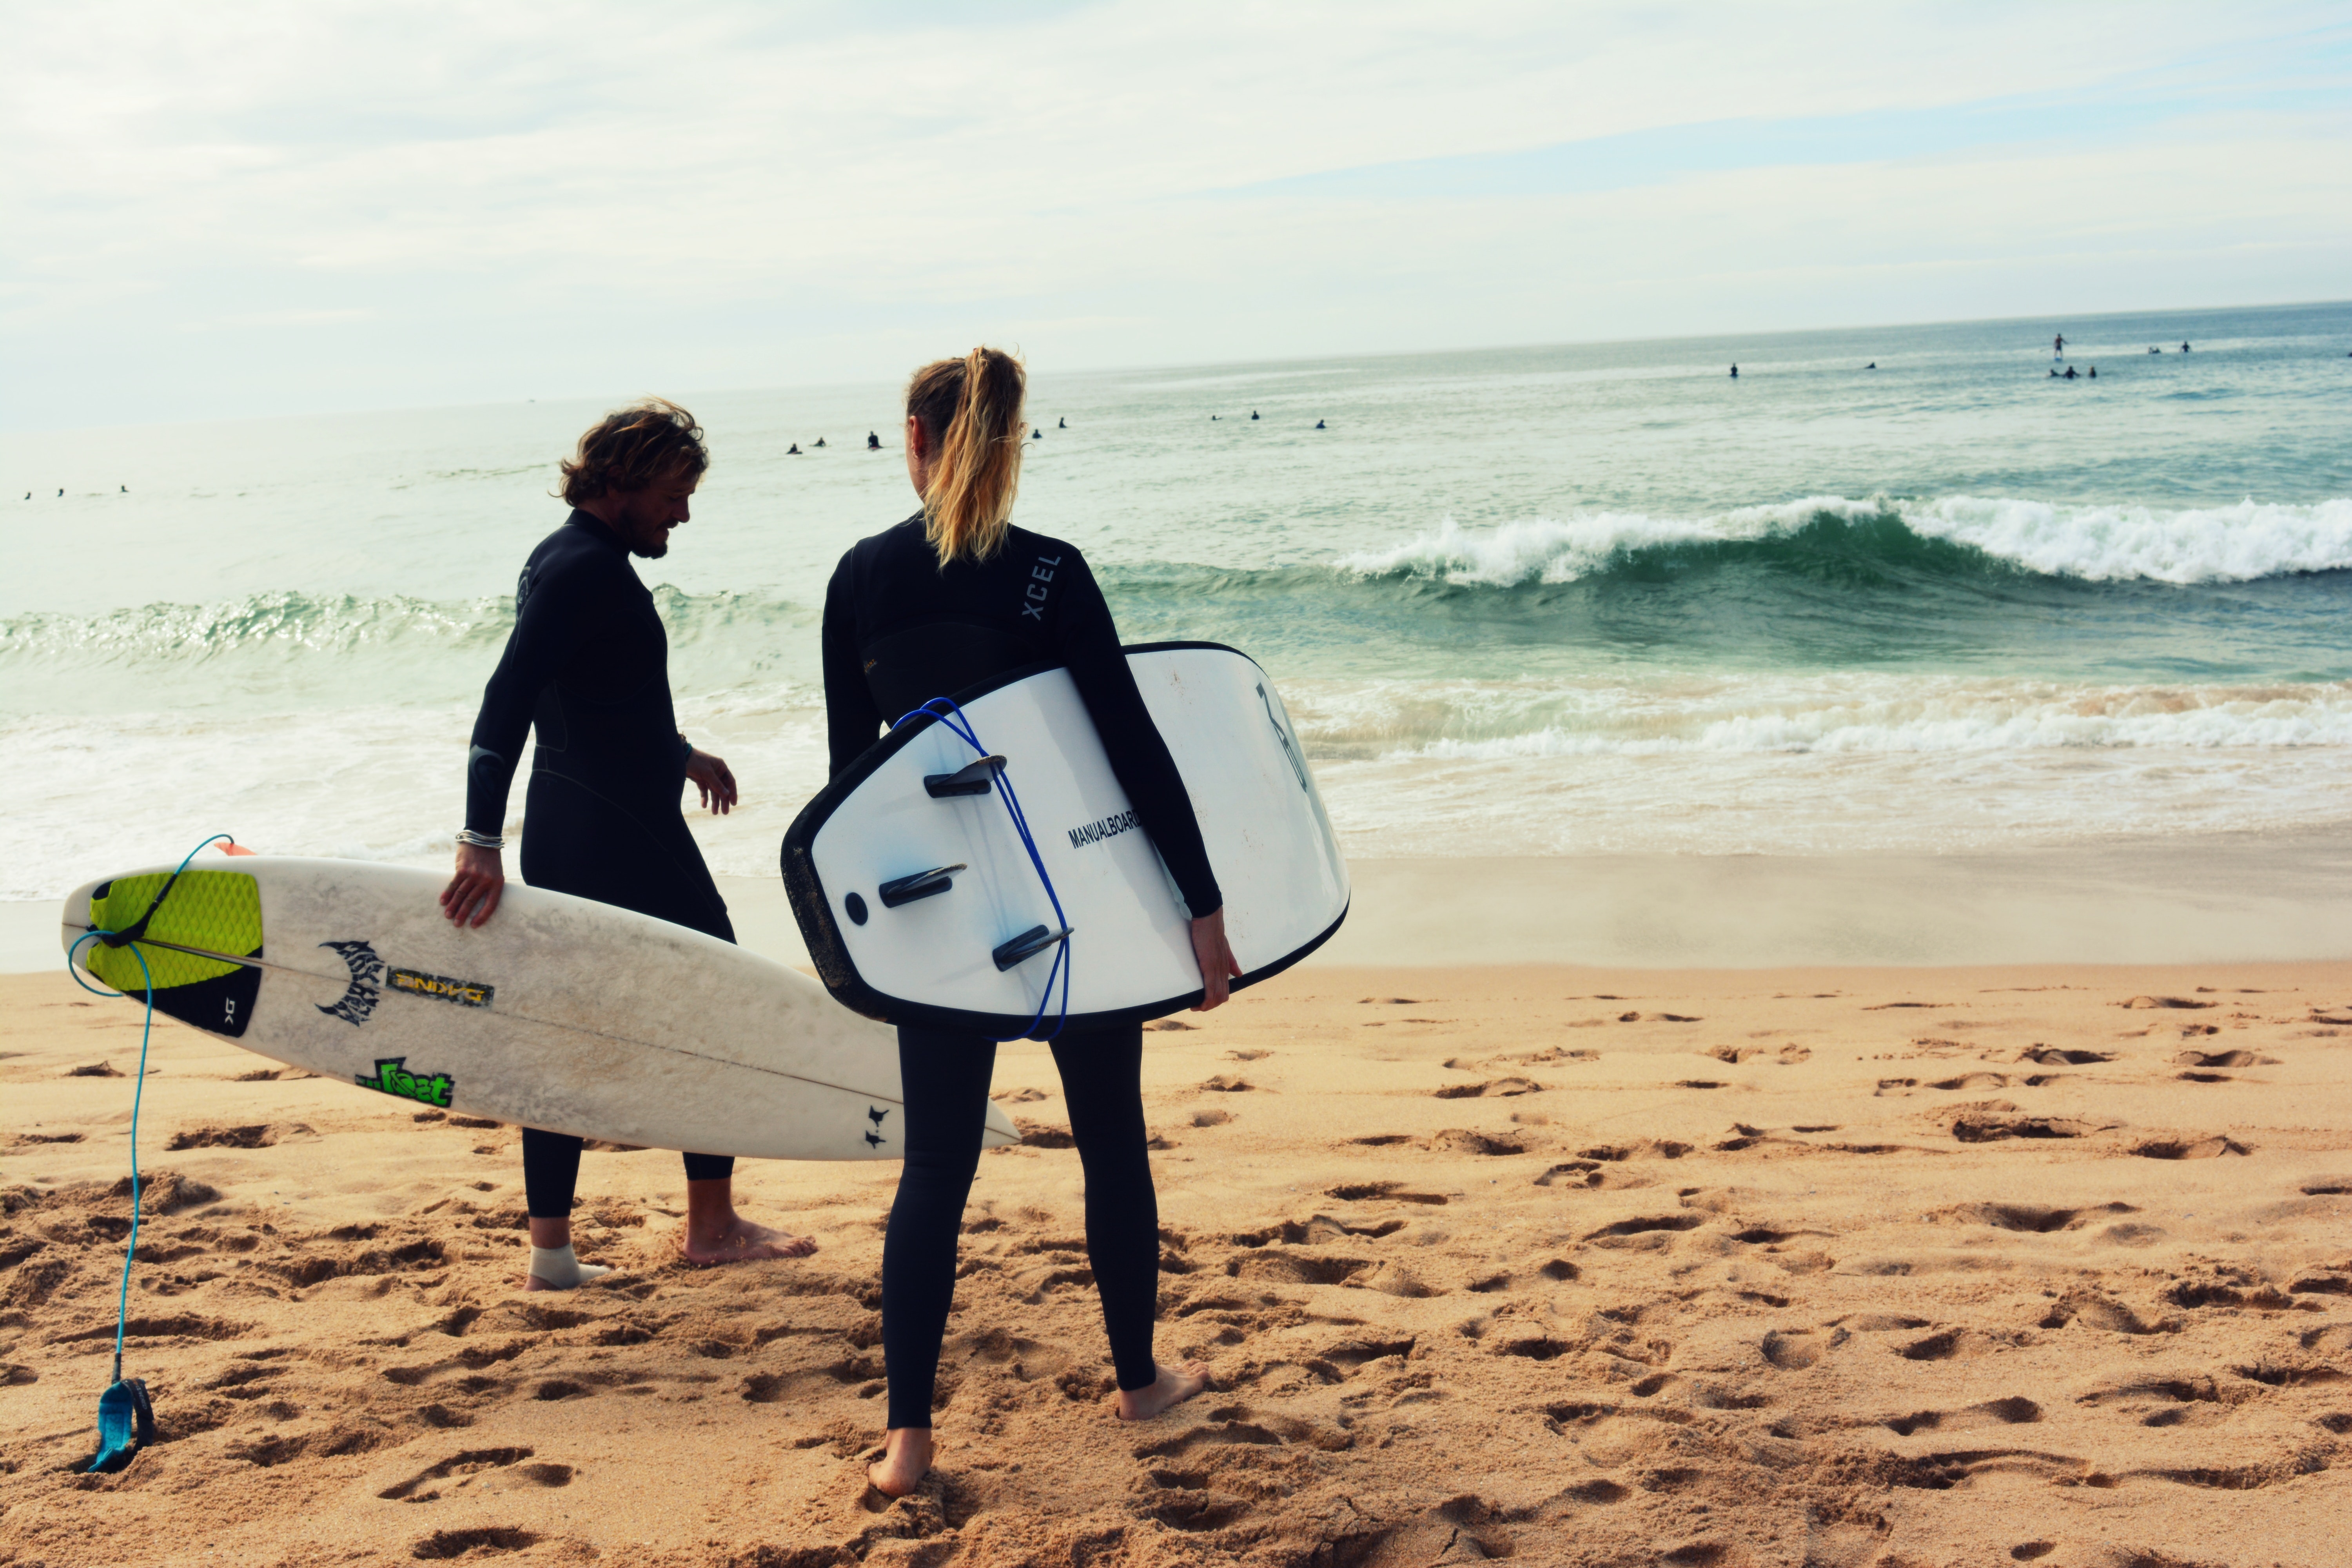 L'International Surfing Day viene celebrato ogni anno il terzo sabato di giugno